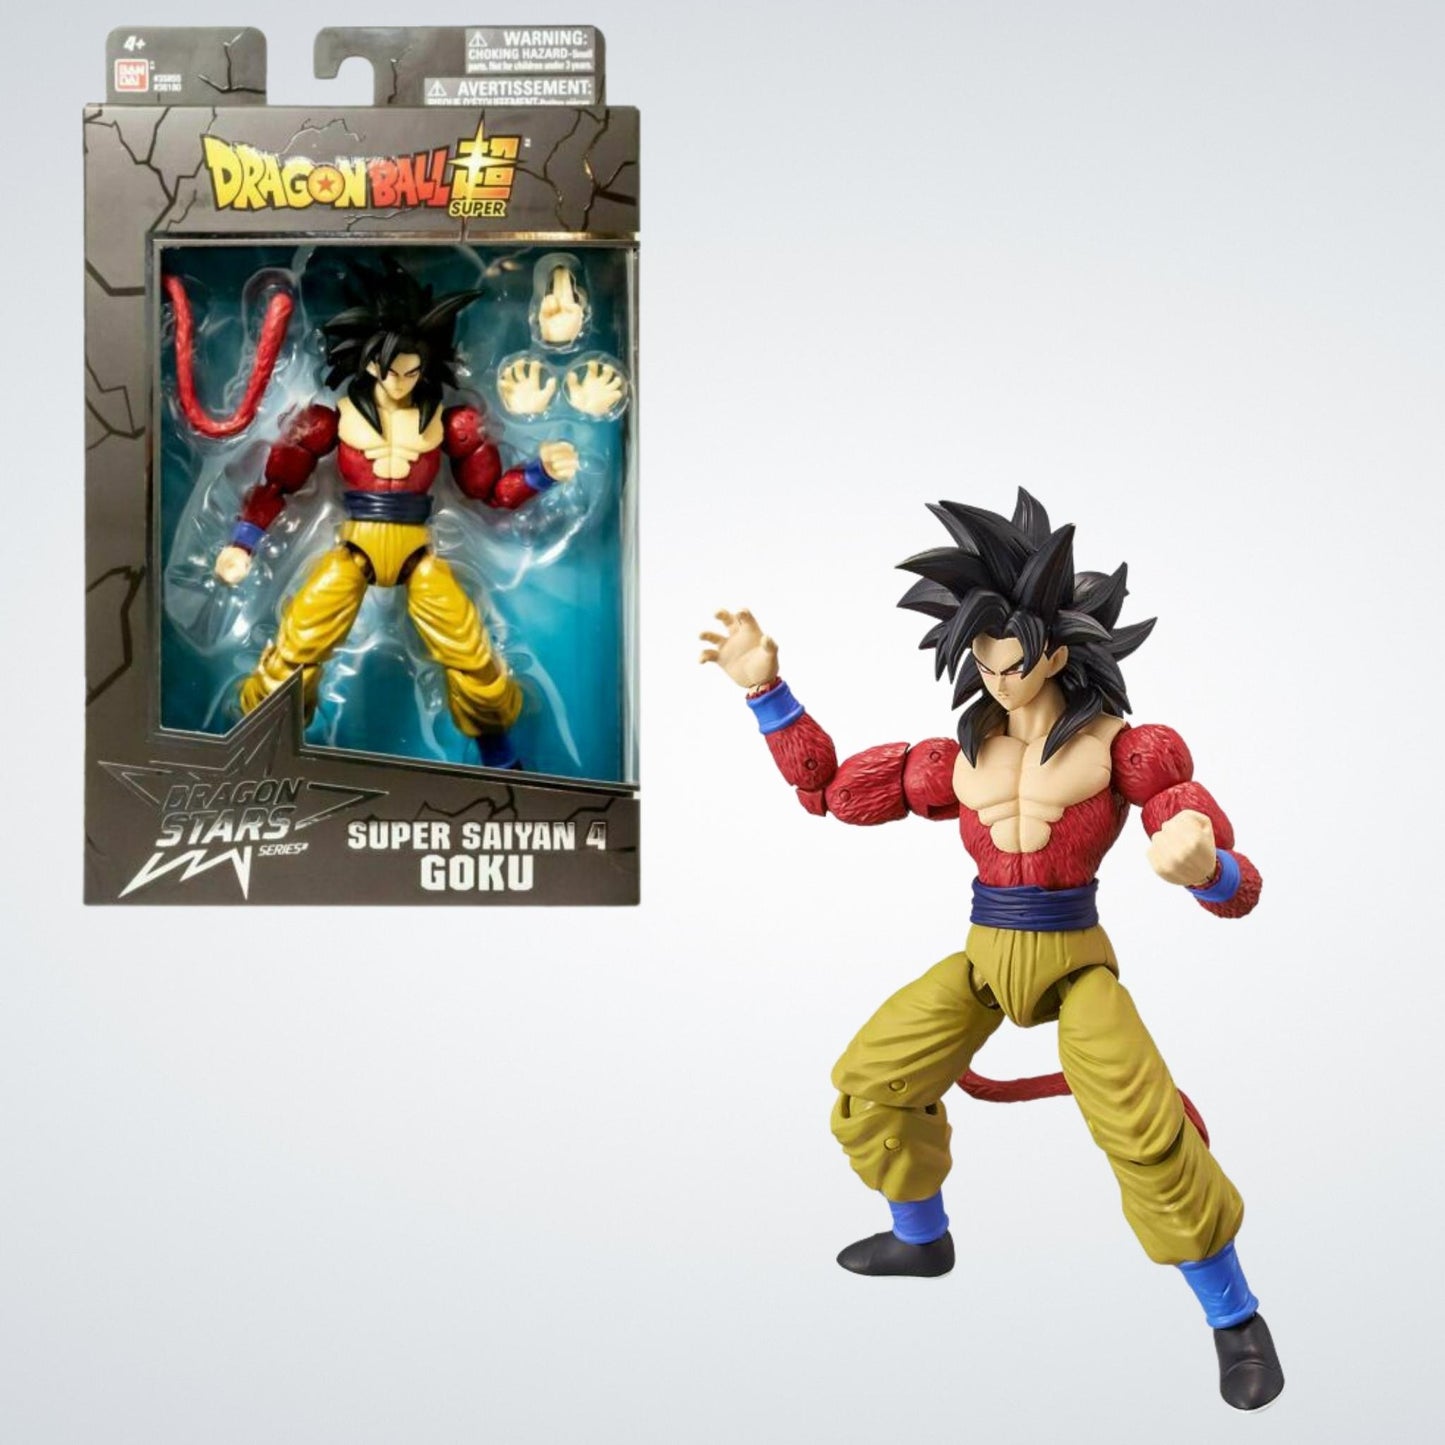 Super Saiyan 4 Goku (Dragon Ball Super) Dragon Stars Action Figure